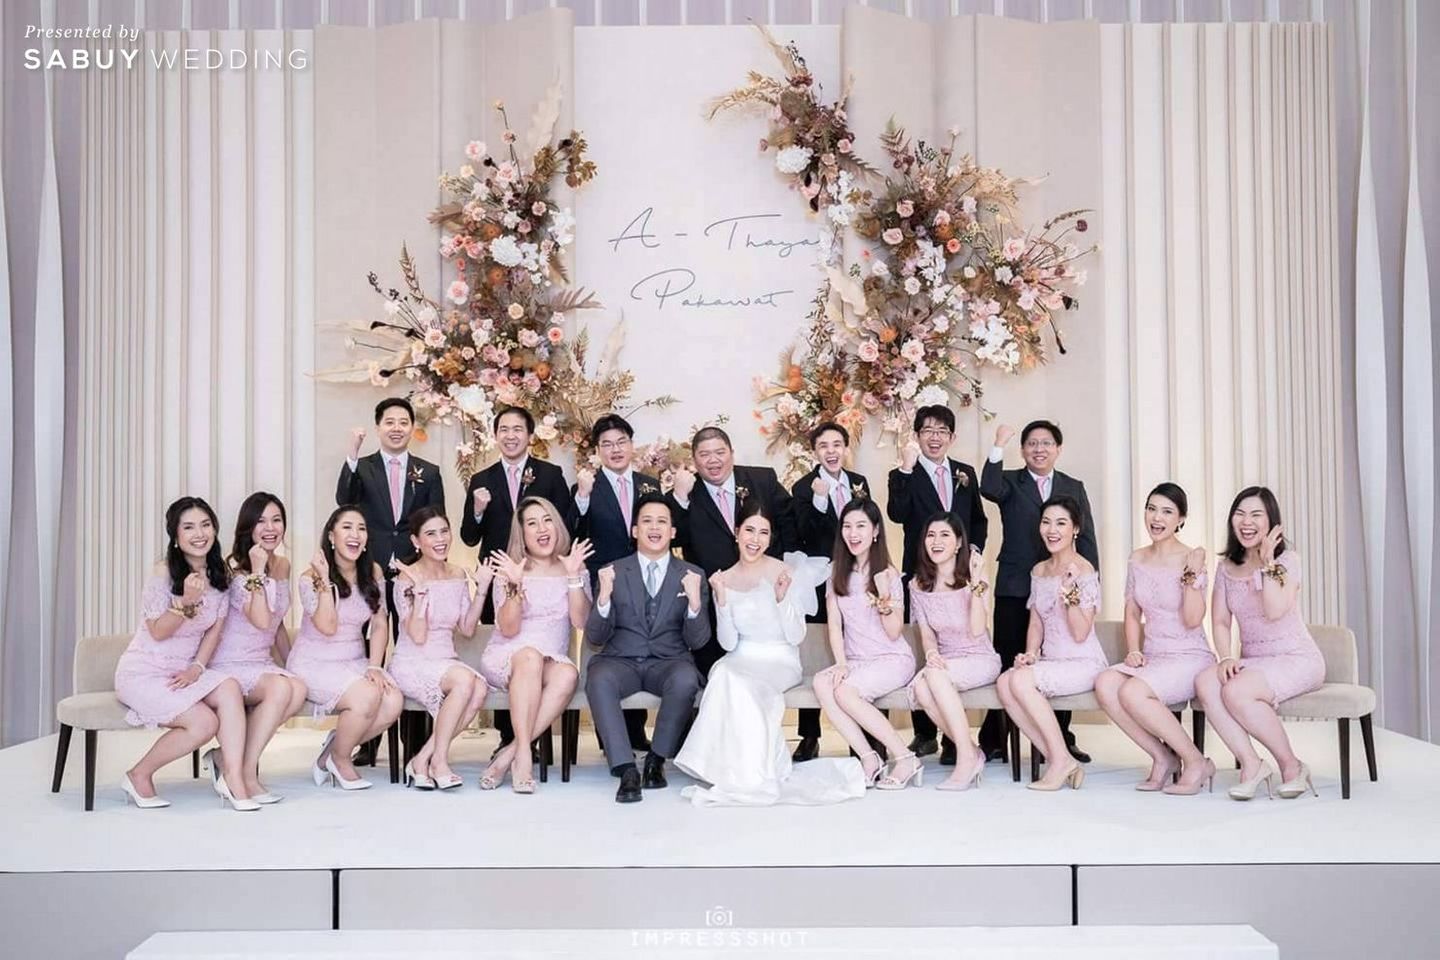 เจ้าบ่าว,พิธีหมั้น,แต่งงาน,เจ้าสาว,ดอกไม้เจ้าสาว,เพื่อนเจ้าสาว รีวิวงานแต่งสวย Glam เรียบหรู ธีมสีชมพูทอง @ Park Hyatt Bangkok